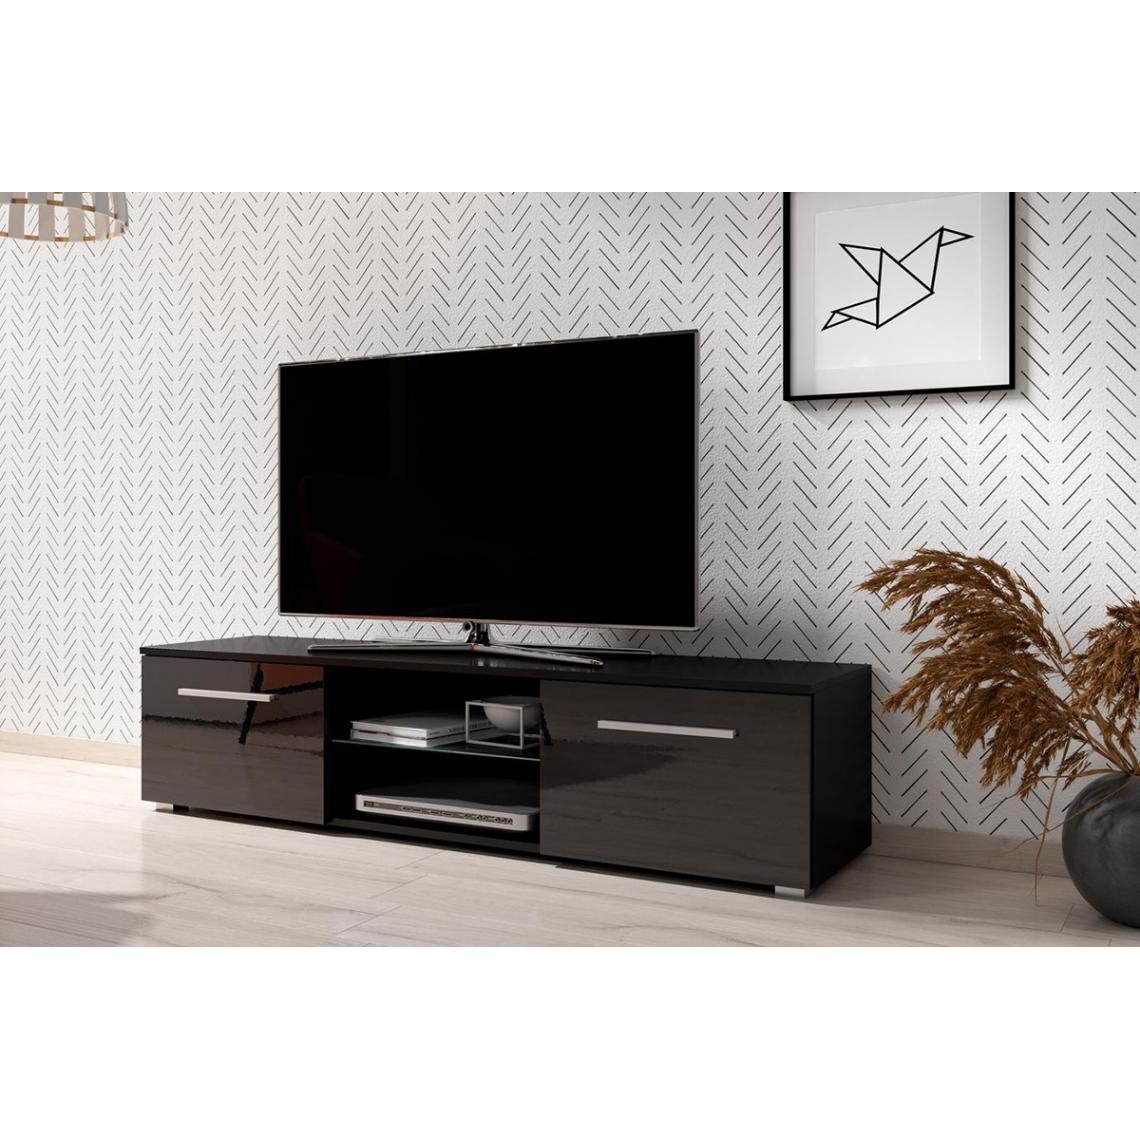 Pegane - Meuble TV coloris noir mat / noir brillant - hauteur 36 x Longueur 140 x profondeur 40cm - Meubles TV, Hi-Fi